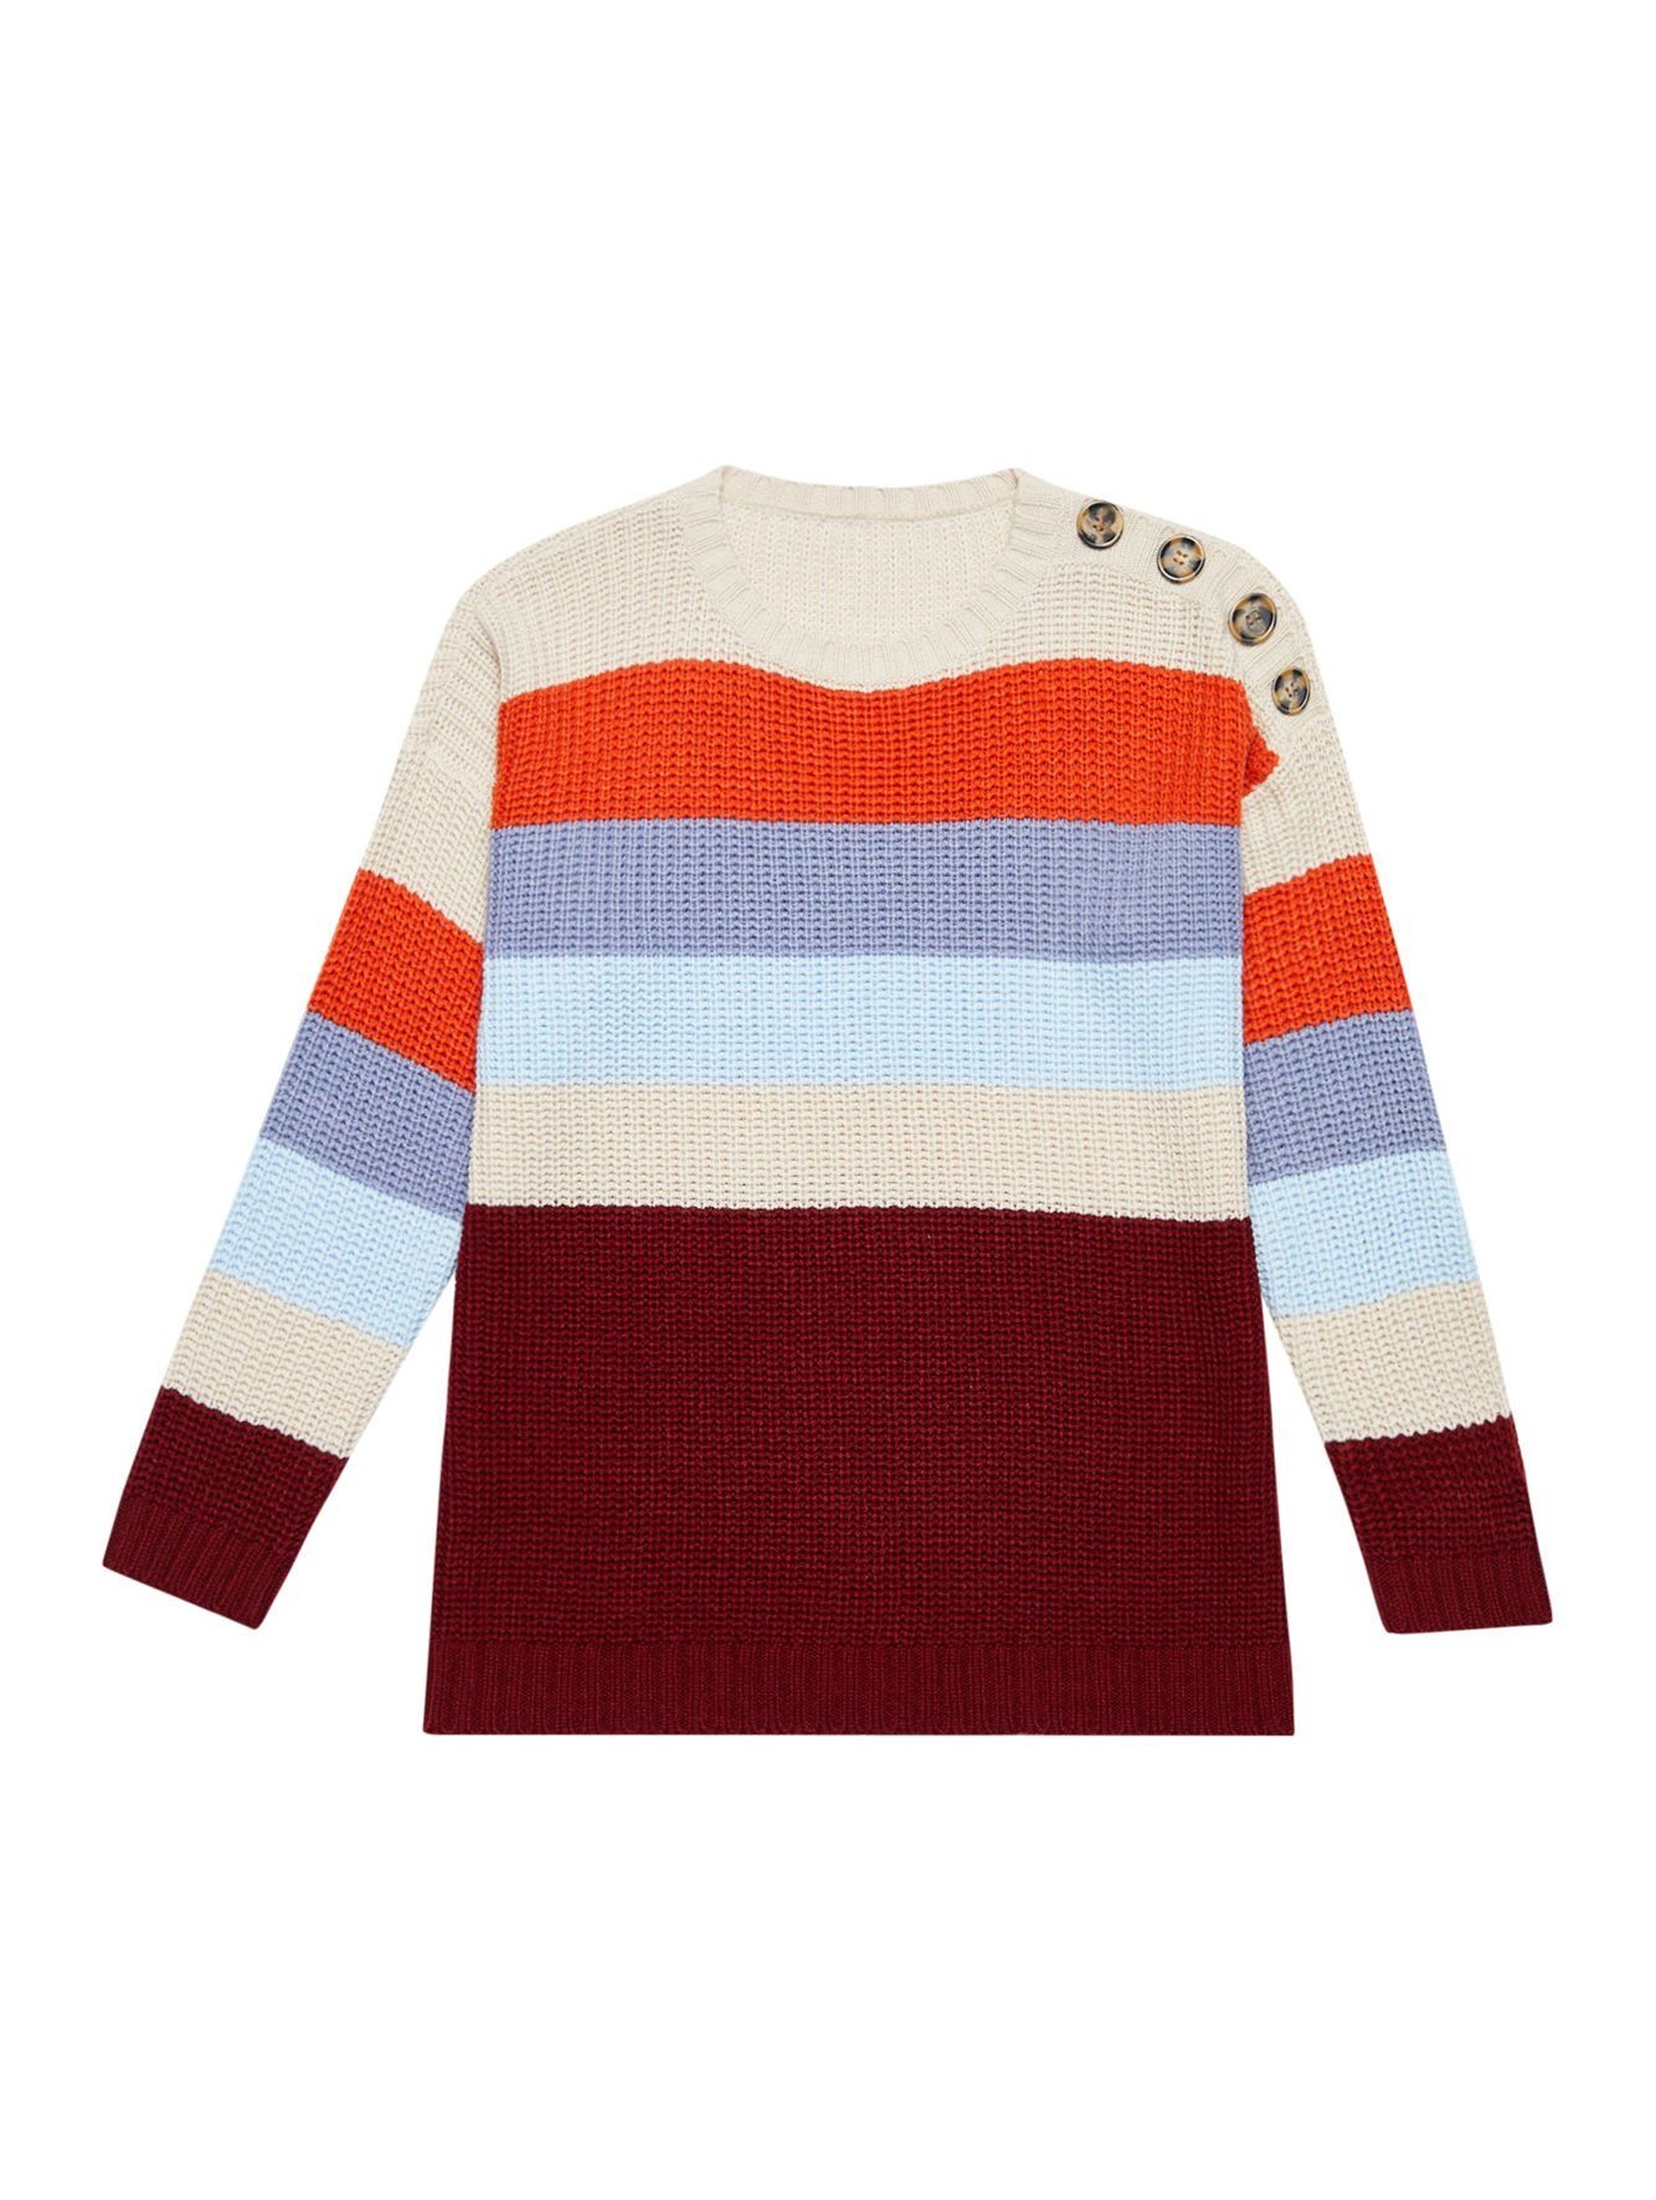 Kolorowy sweter damski z ozdobnymi guzikami